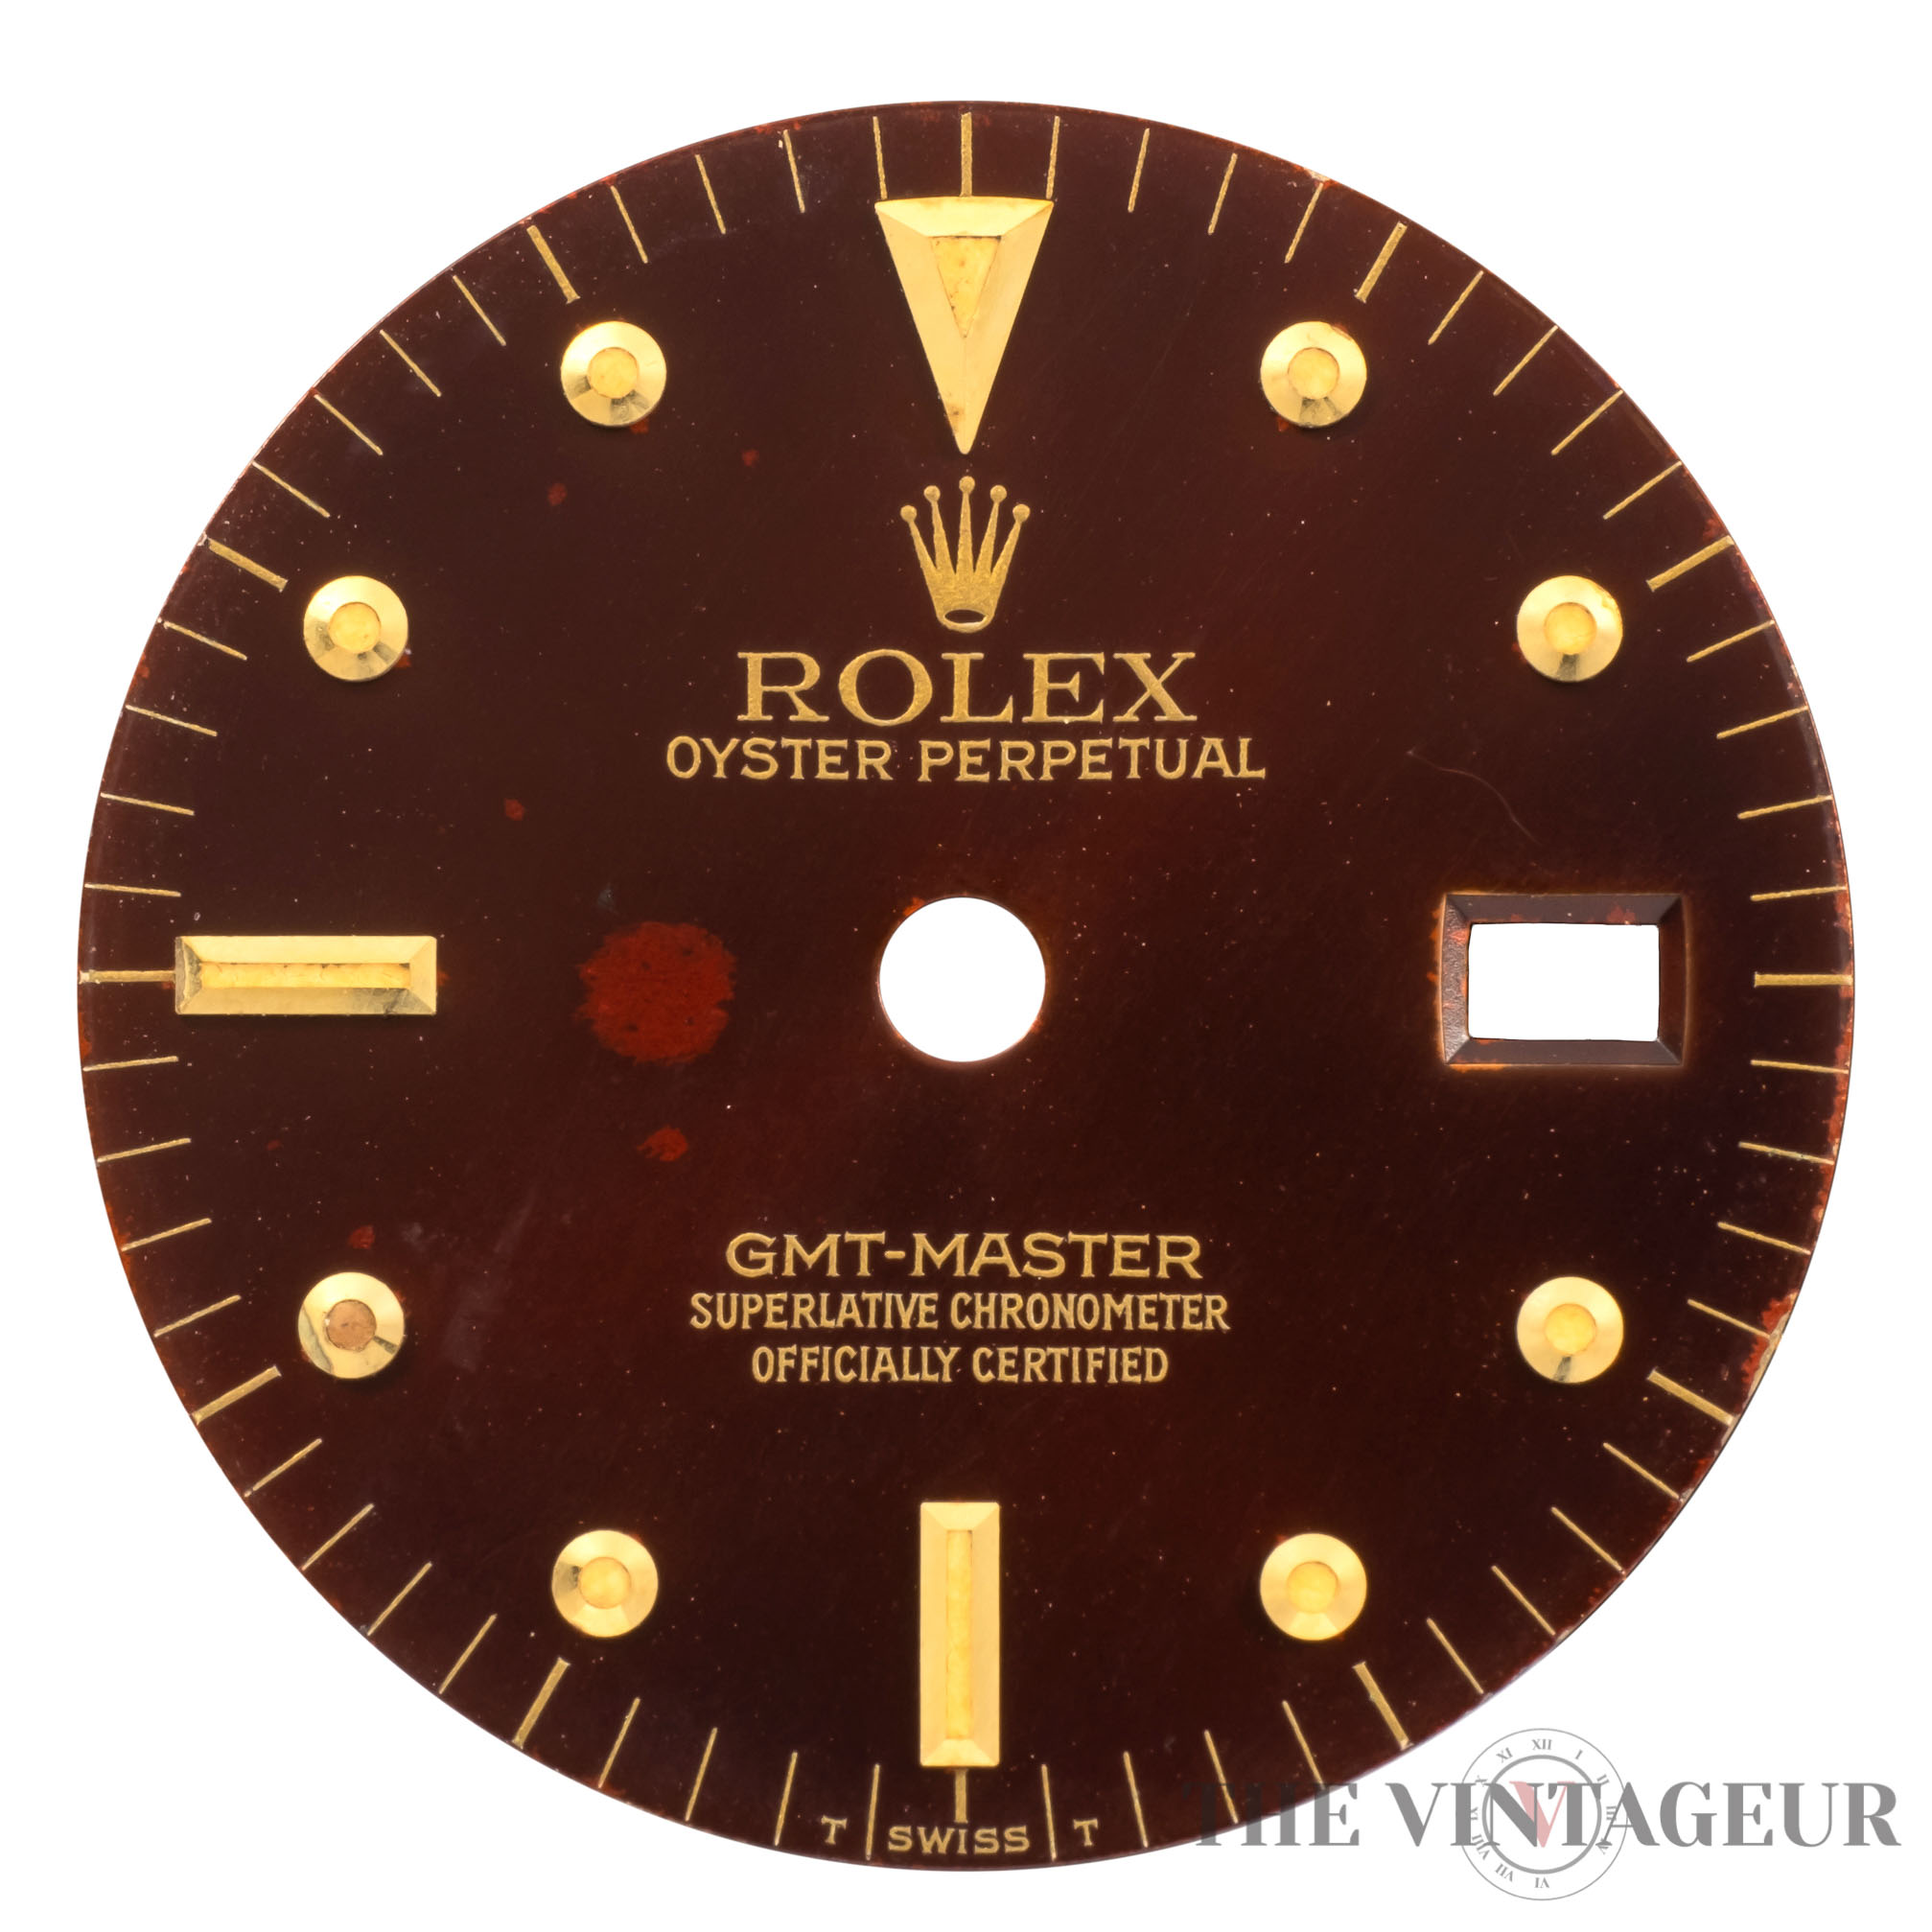 Rolex gmt-master